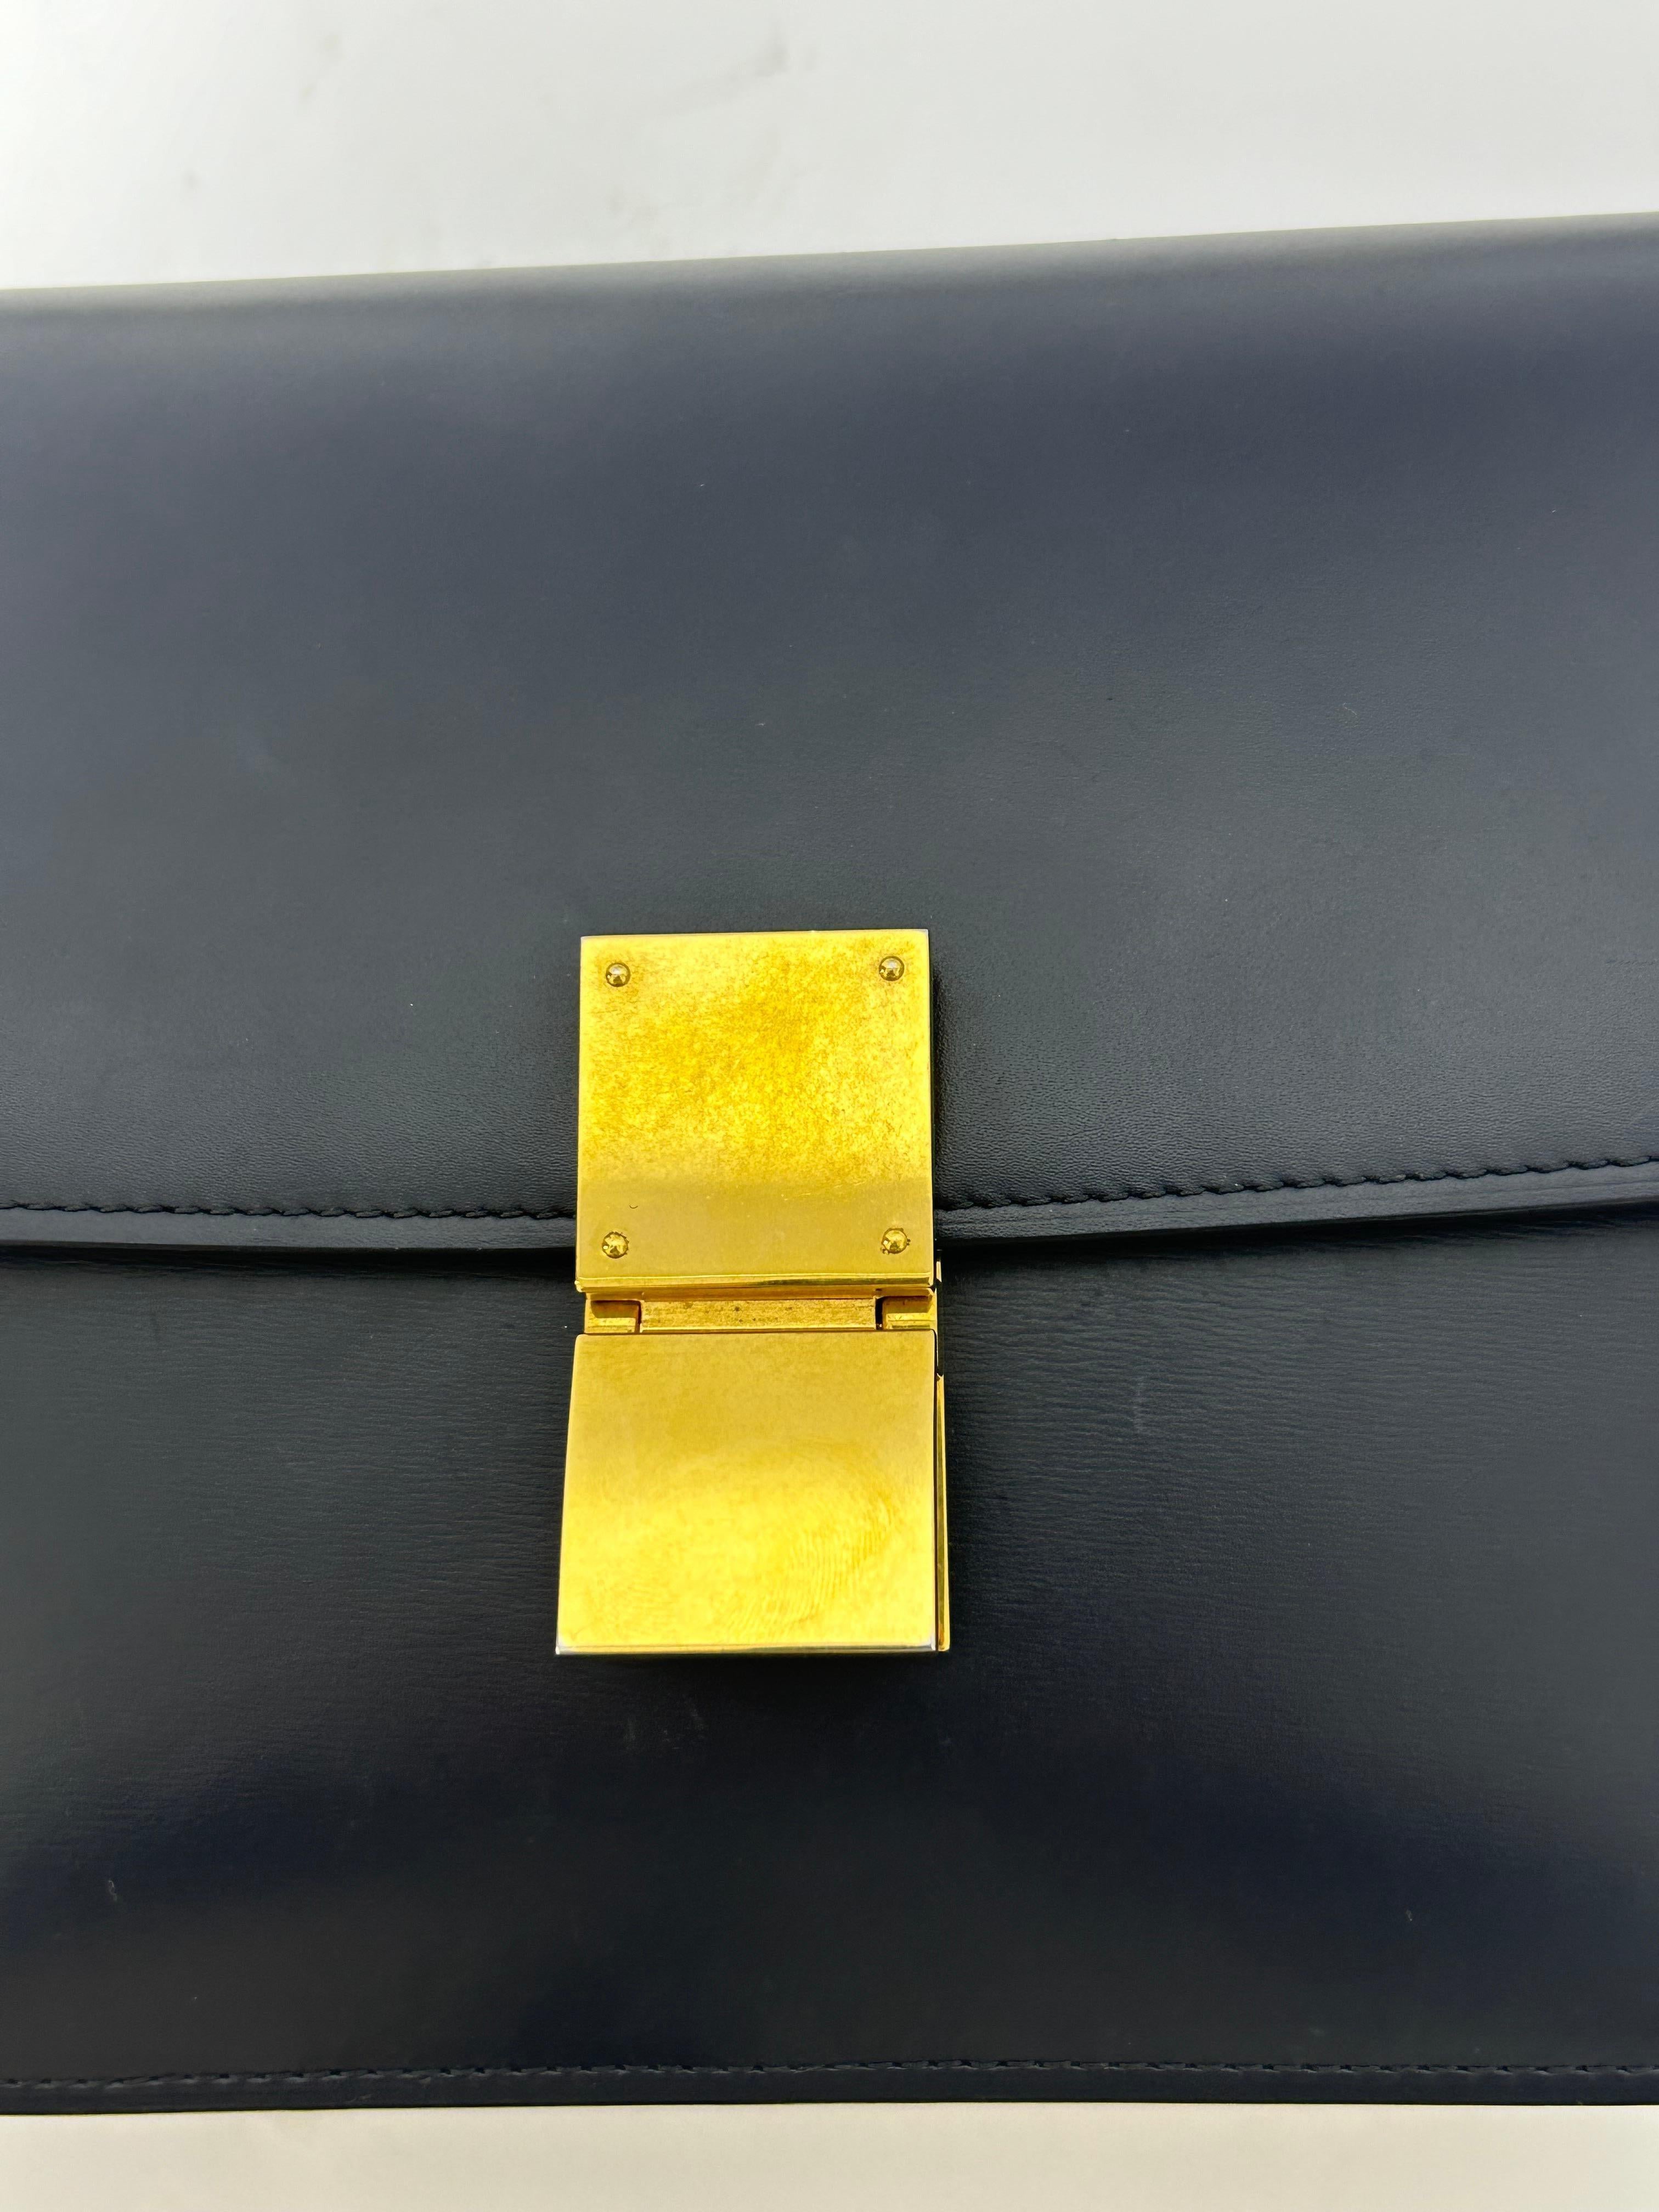 Celine Navy Leather Medium Classic Box Shoulder Bag For Sale 4